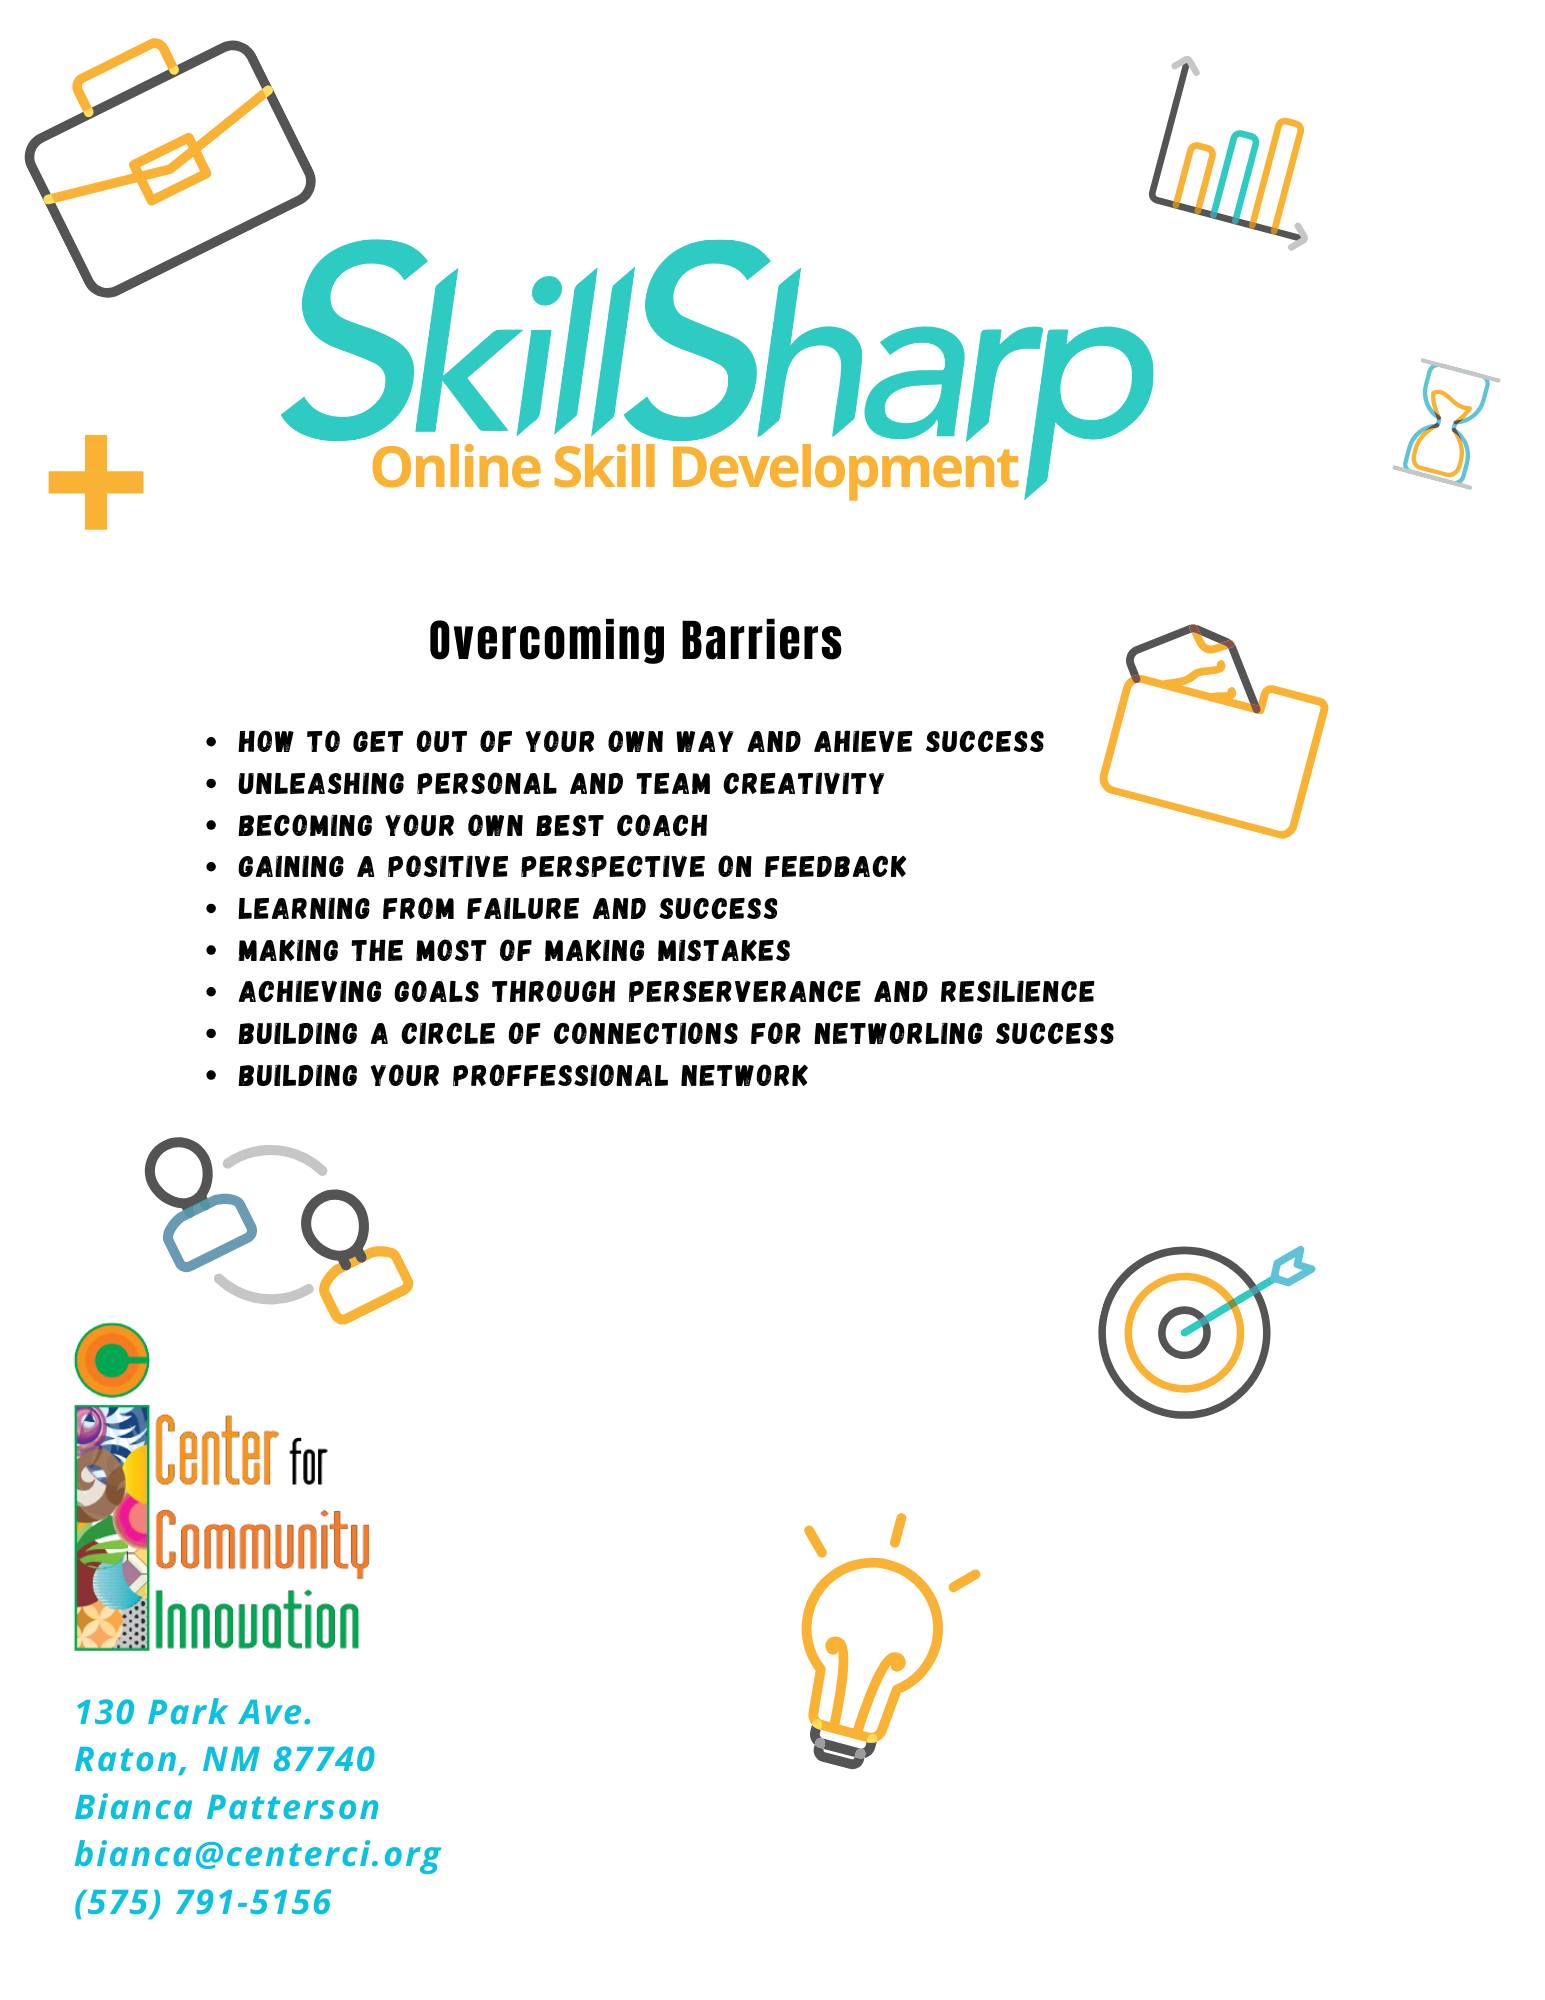 SkillSharp Online Skill Development – Overcoming Barriers